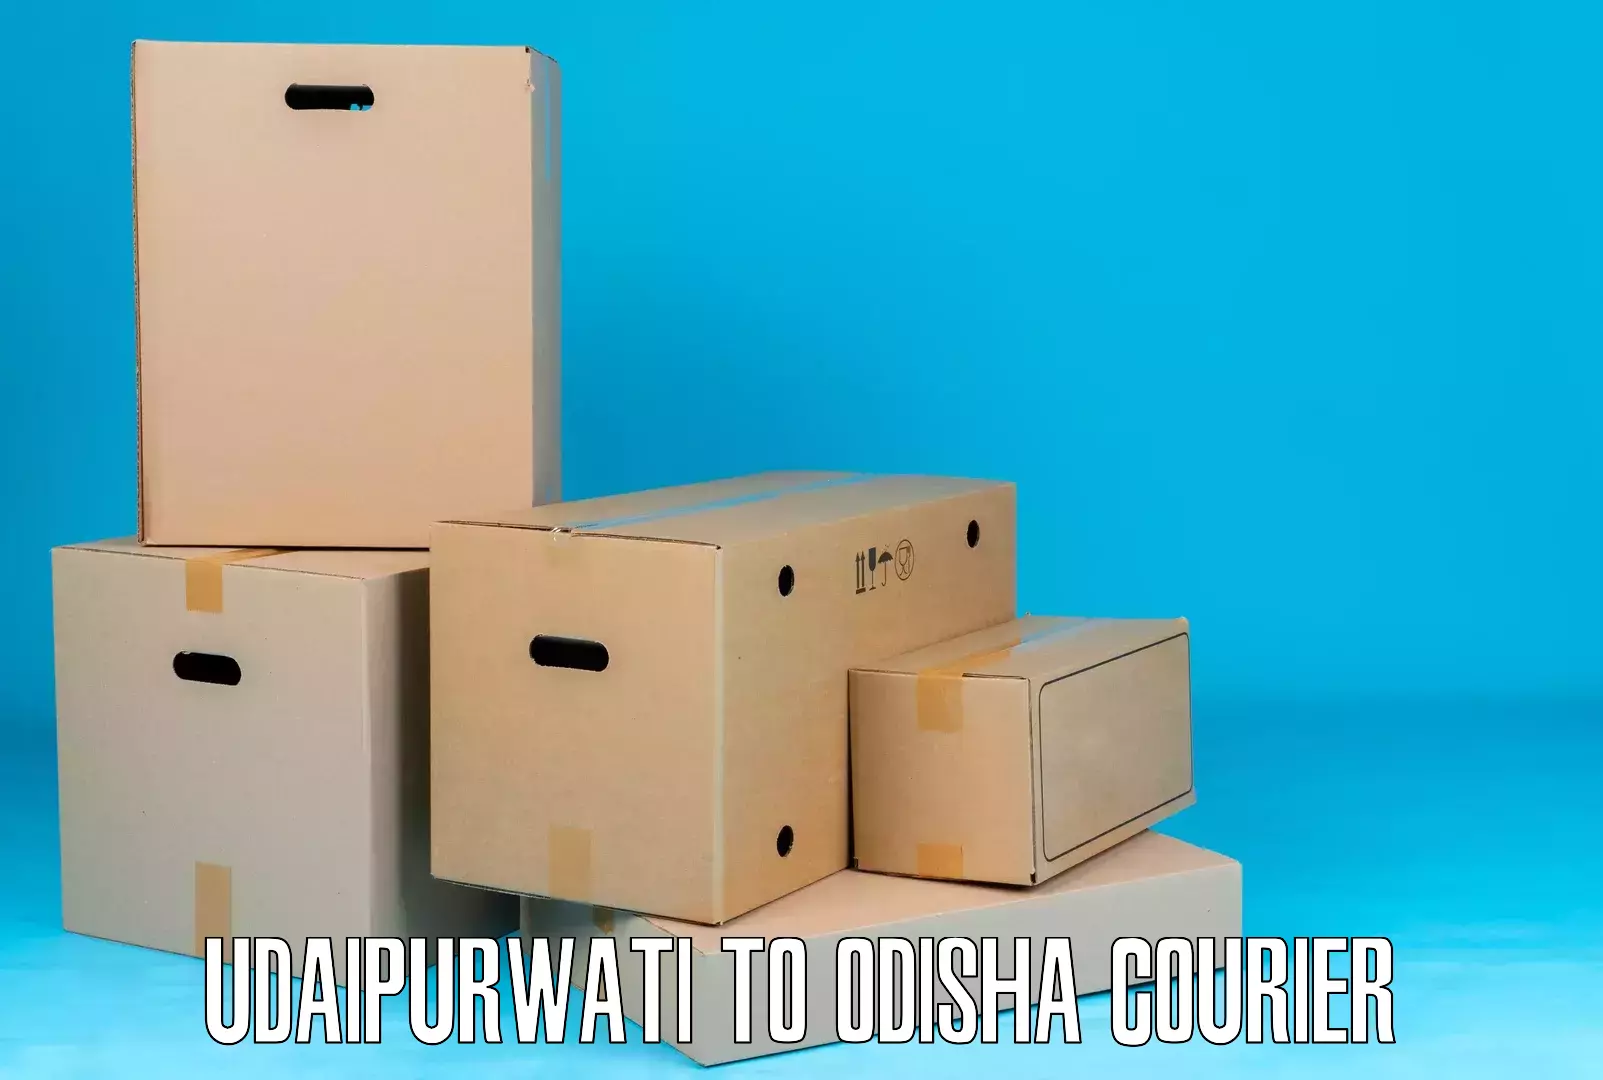 Package forwarding Udaipurwati to Balipokhari